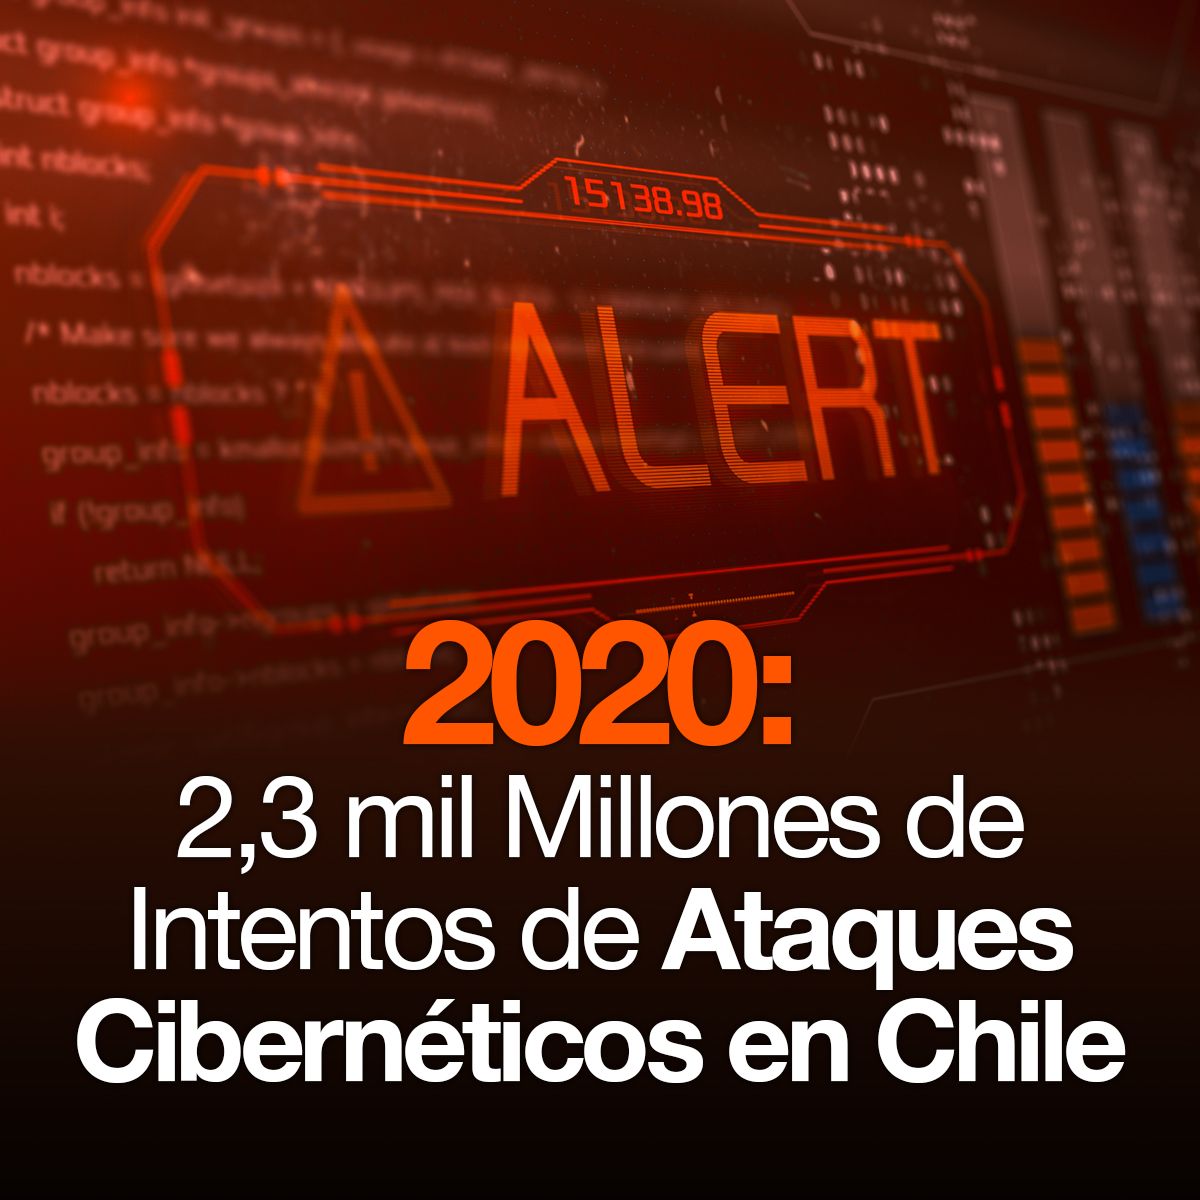 2020: 2,3 mil Millones de Intentos de Ataques Cibernéticos en Chile